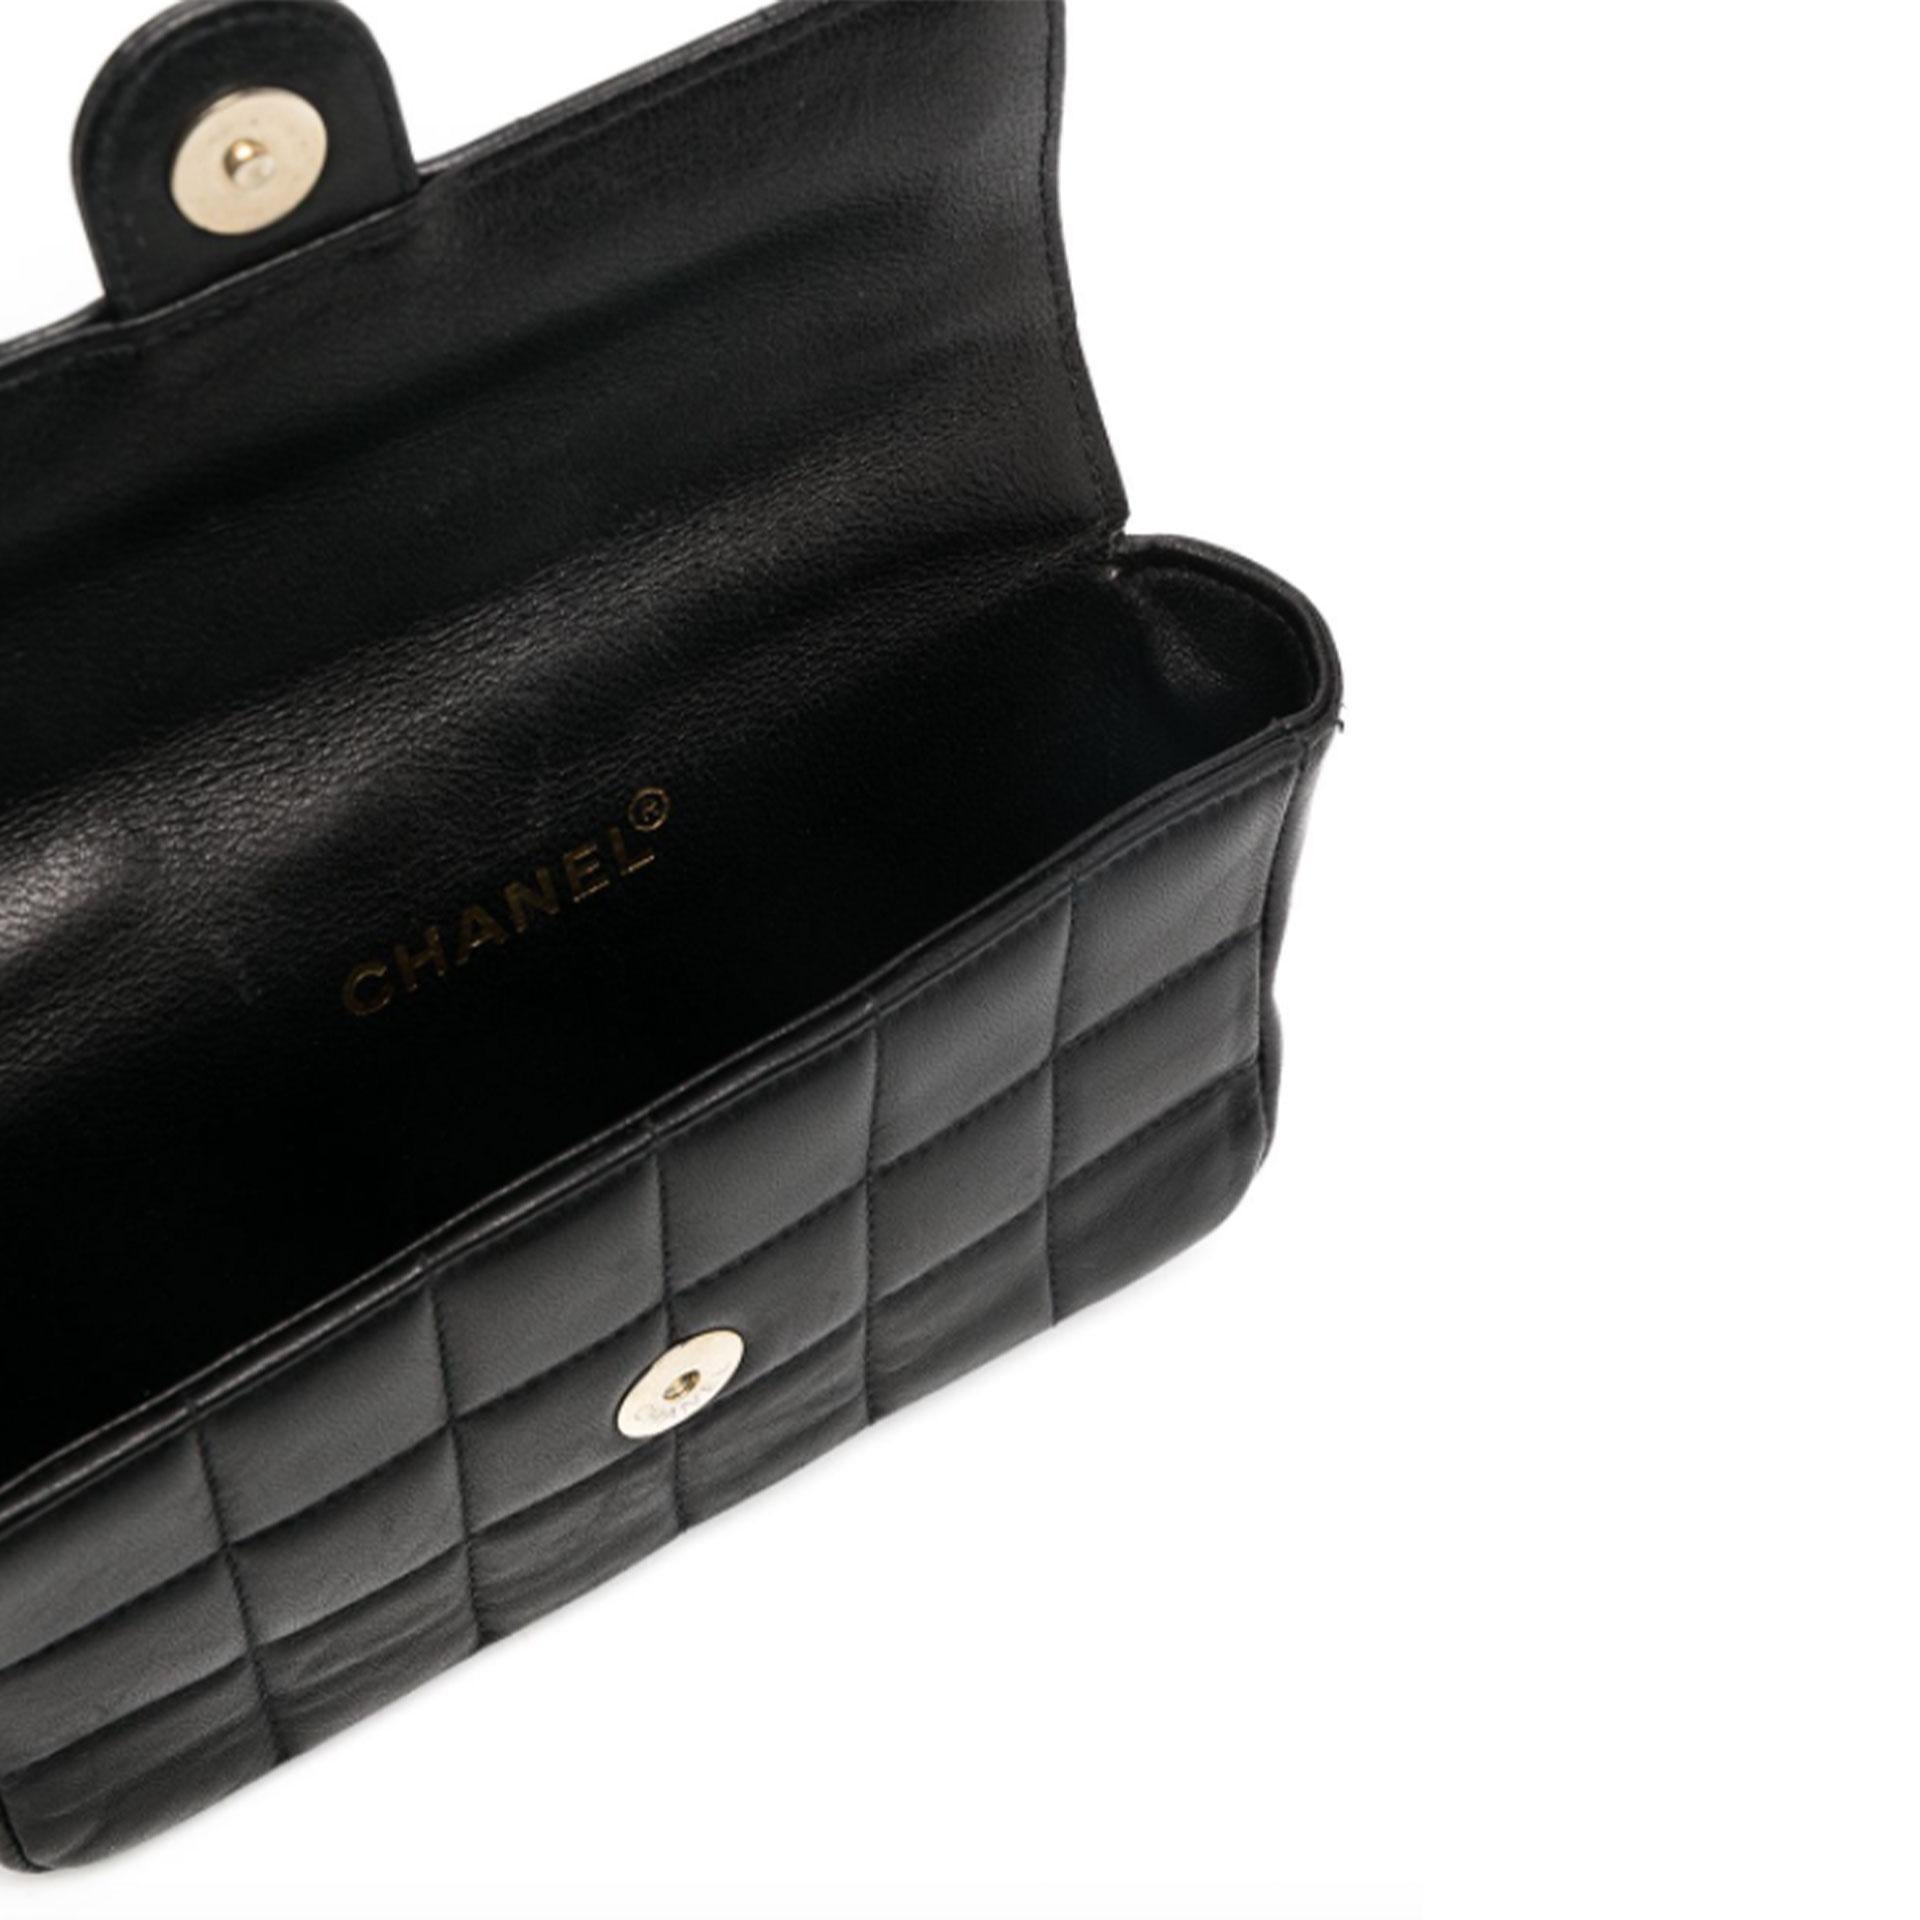 Chanel Rare Vintage Black Lambskin Waist Belt Bag Fanny Pack

Cuir noir 
2002 
sac à ceinture matelassé 
avec un haut plié et une fermeture à bouton-pression
un logo CC emboîté
matériel de couleur or 
sangle de taille réglable

Fabriqué en France 